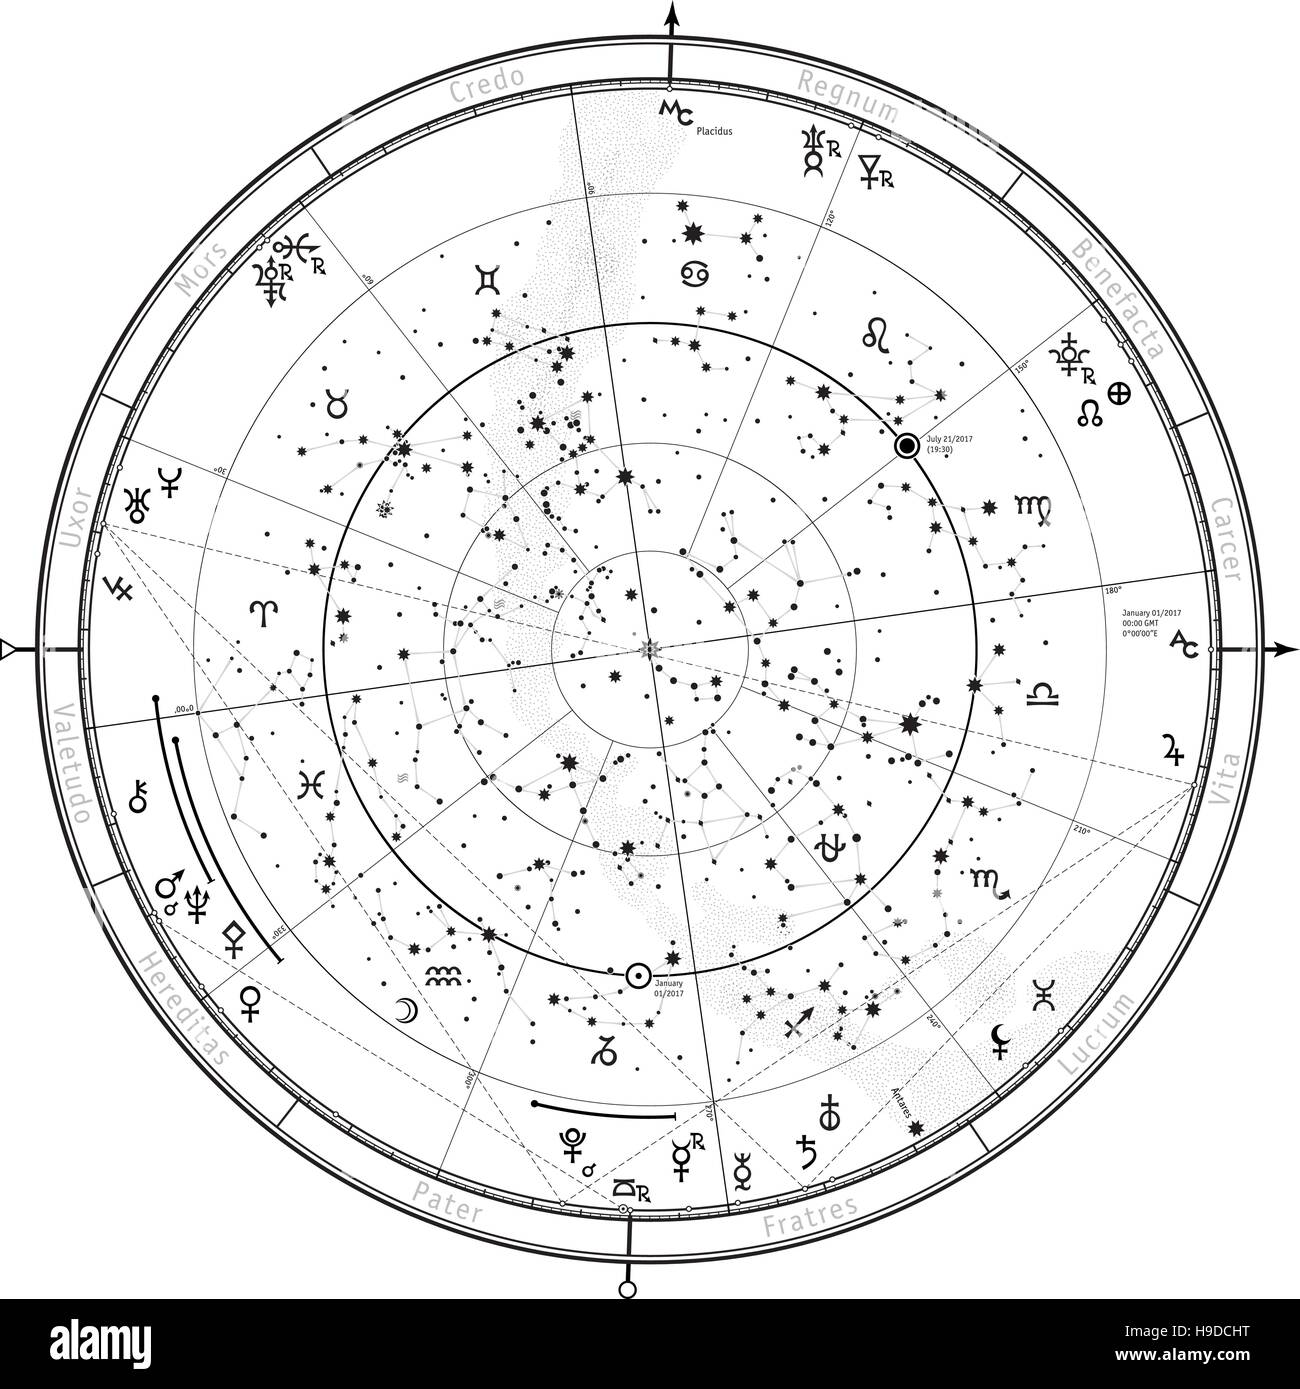 Astrologica mappa celeste di emisfero nord. Oroscopo su Gennaio 1, 2017 (00:00 GMT). Illustrazione Vettoriale